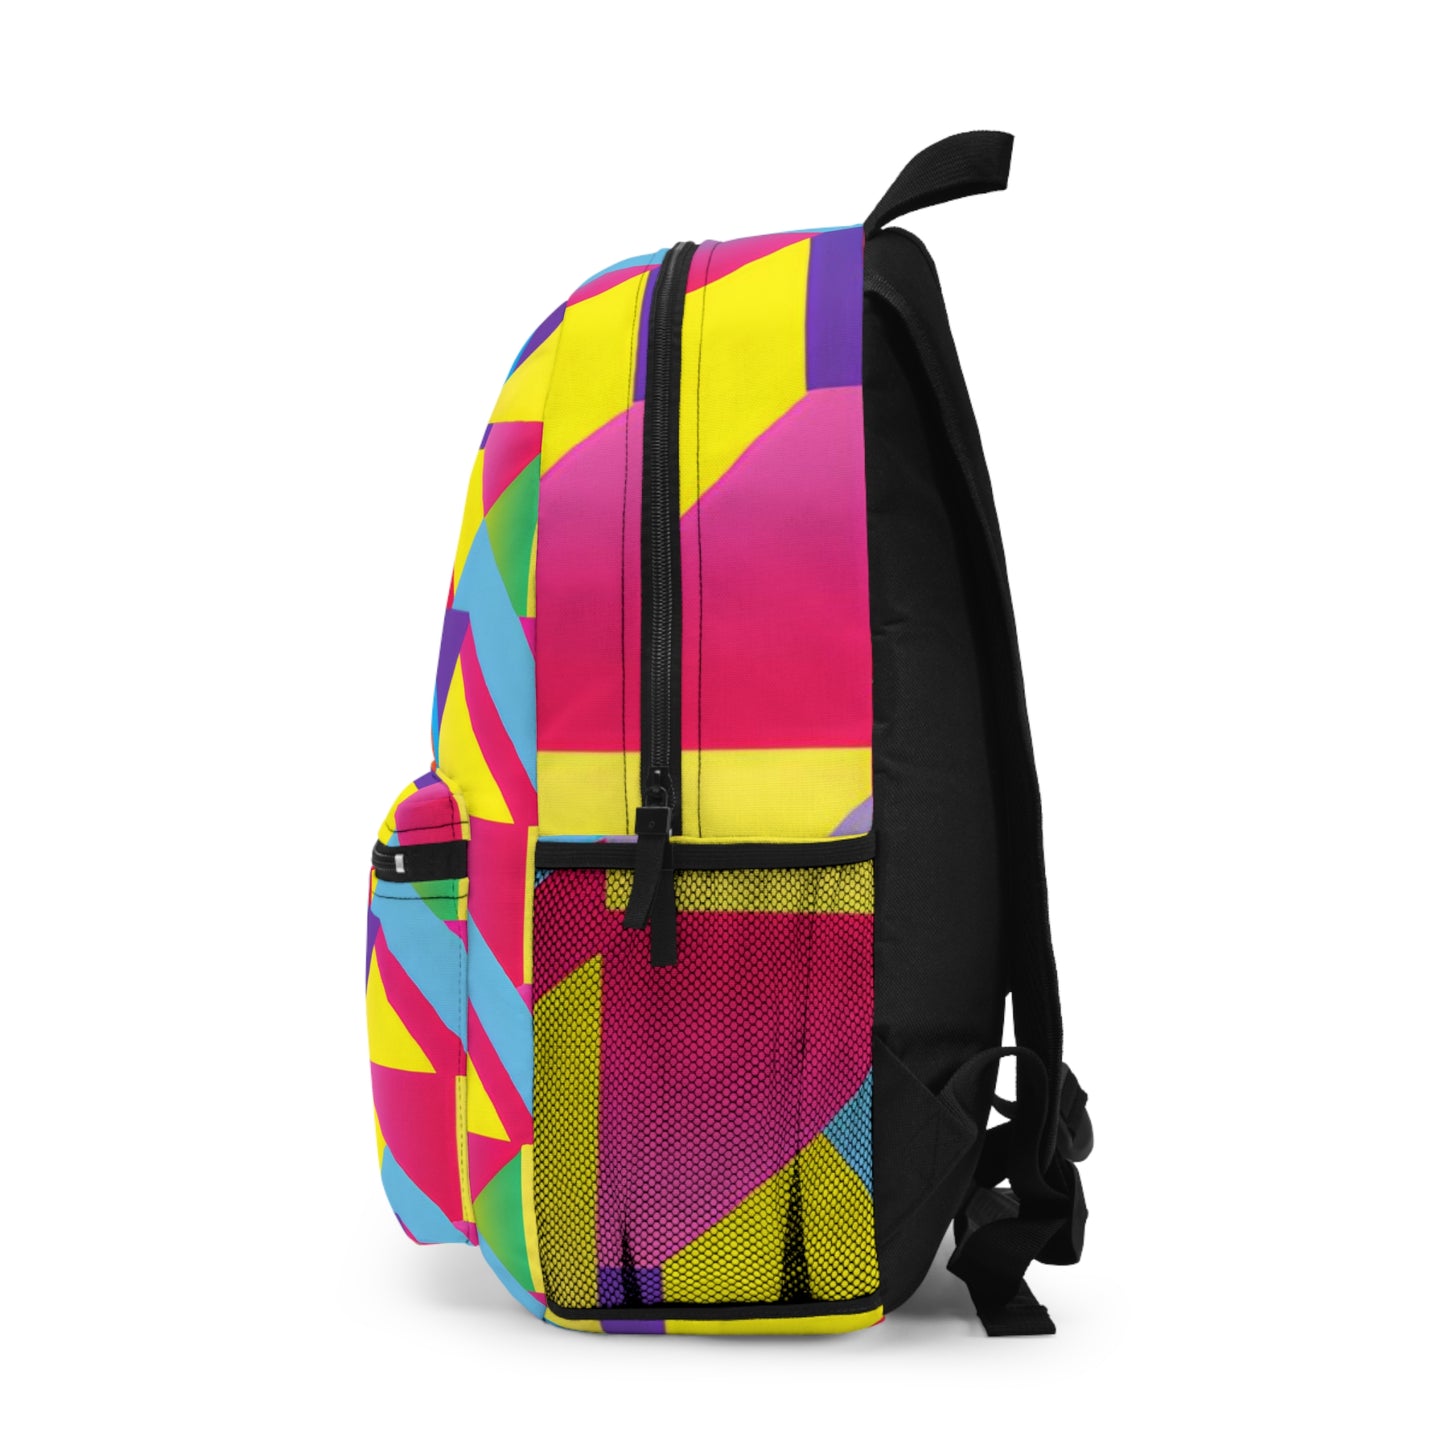 SparklePowder - Hustler Pride Backpack